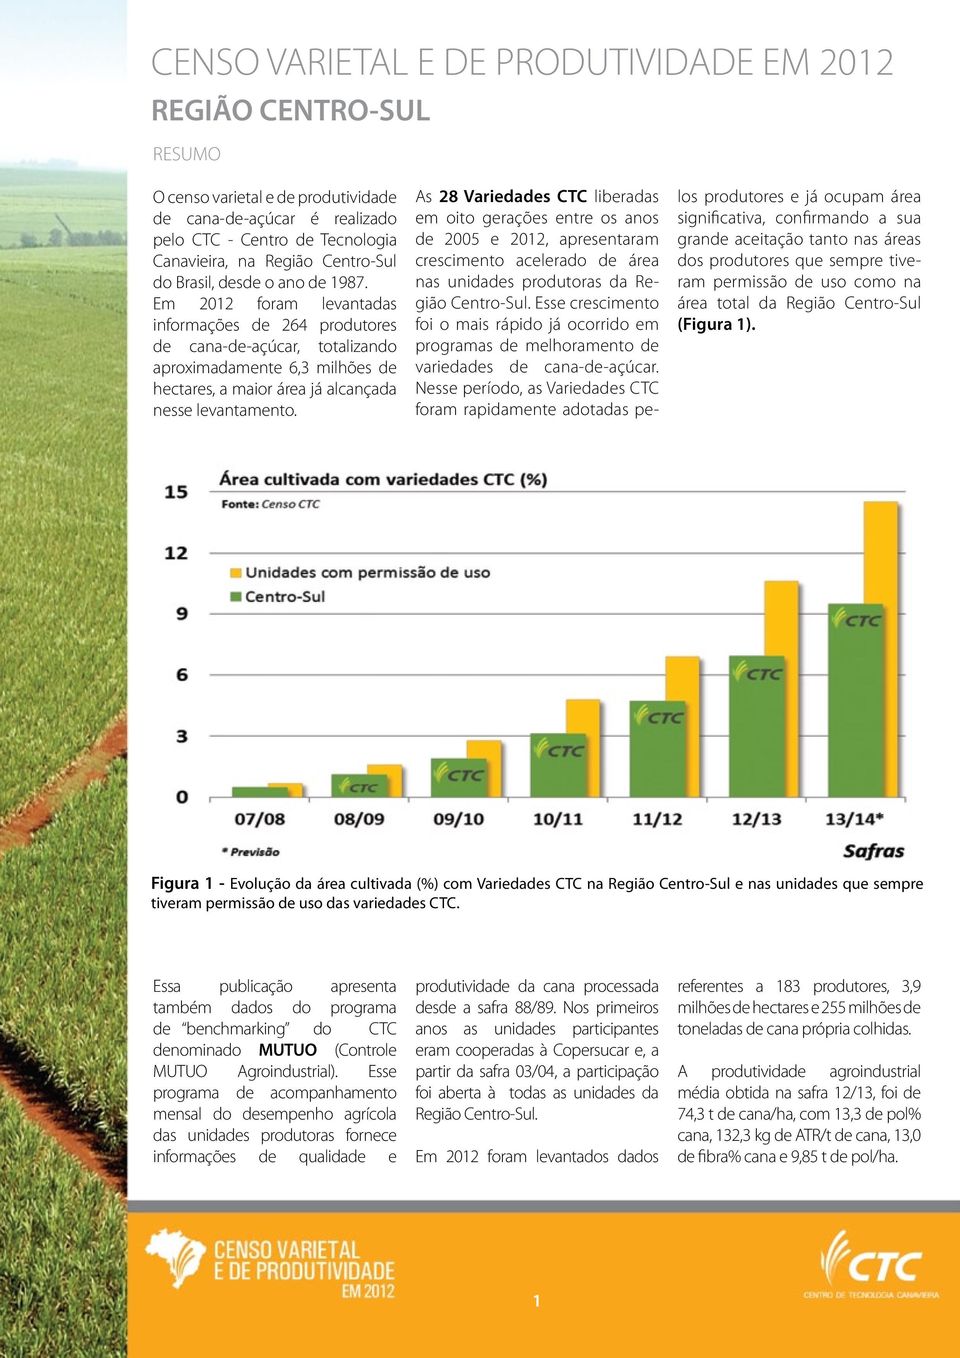 Em 2012 foram levantadas informações de 264 produtores de cana-de-açúcar, totalizando aproximadamente 6,3 milhões de hectares, a maior área já alcançada nesse levantamento.